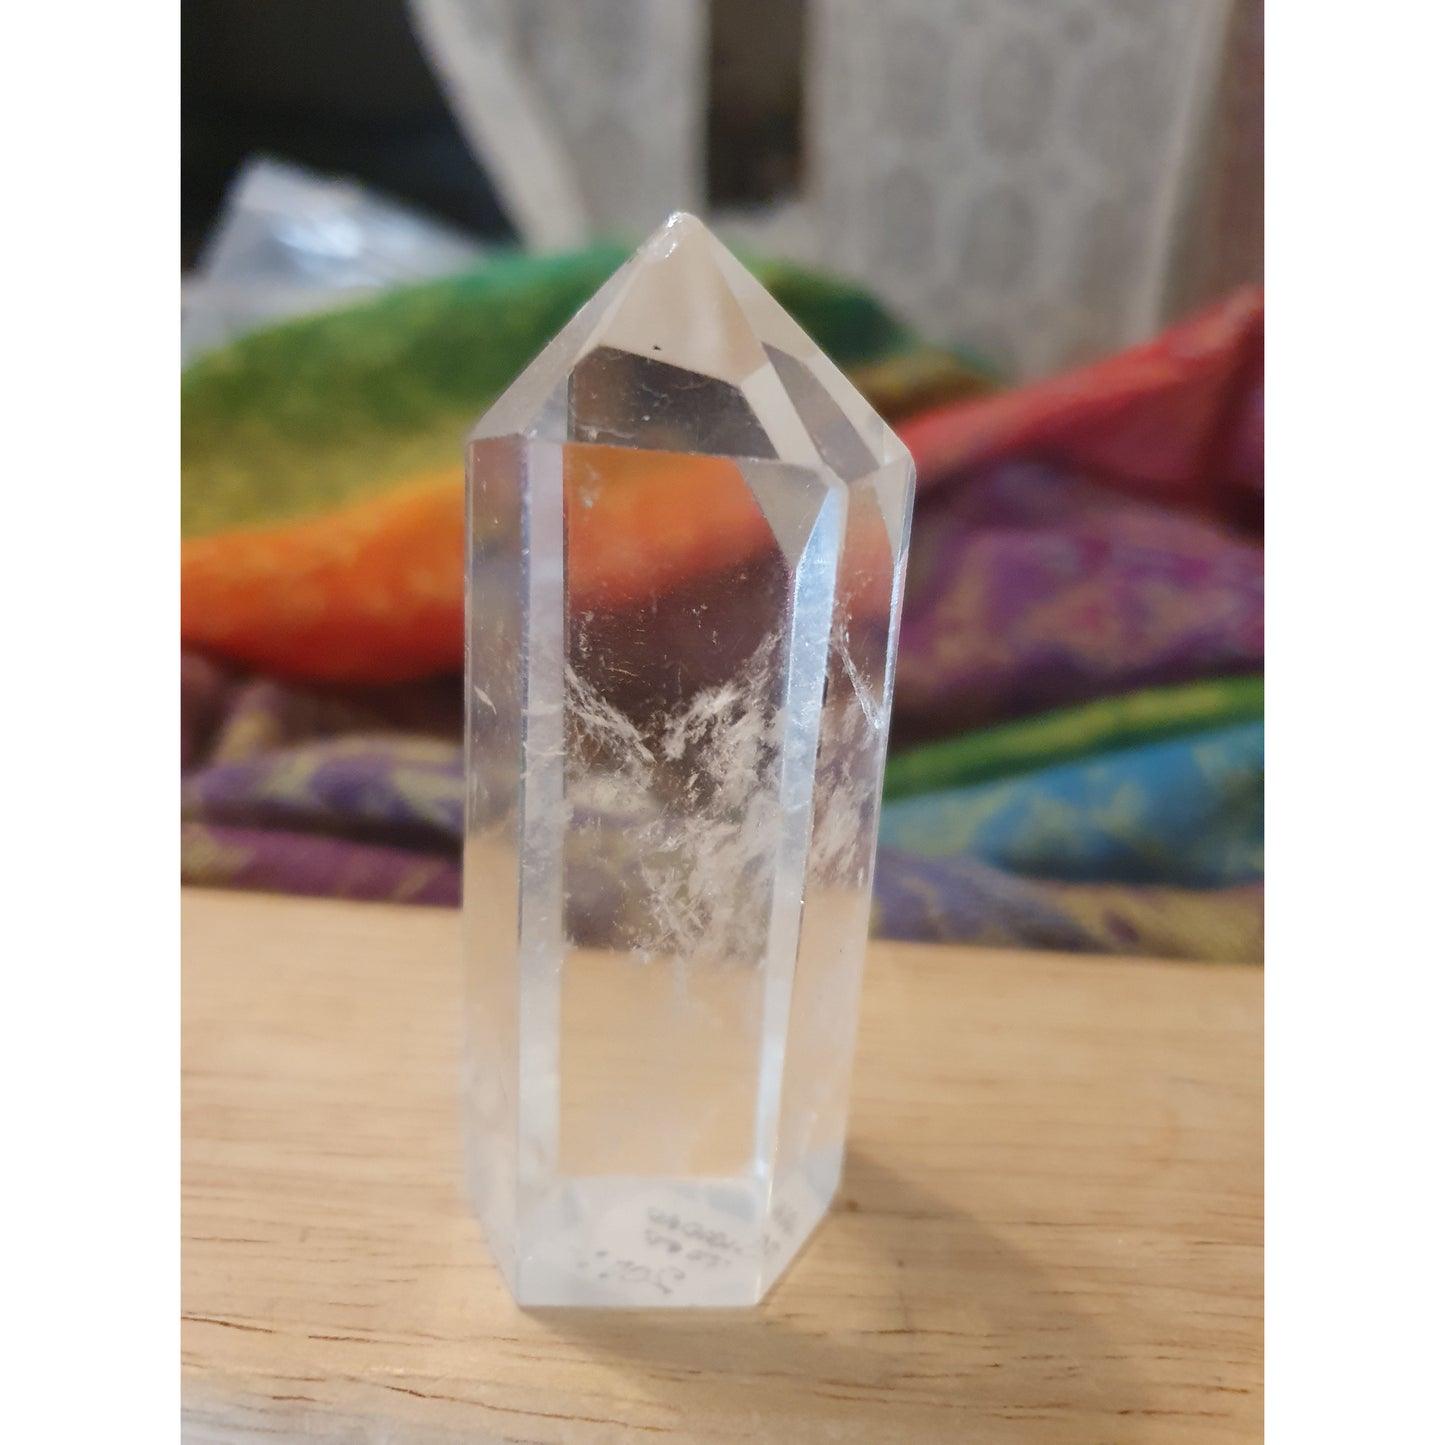 Bergkristall spets/torn c:a 8 cm